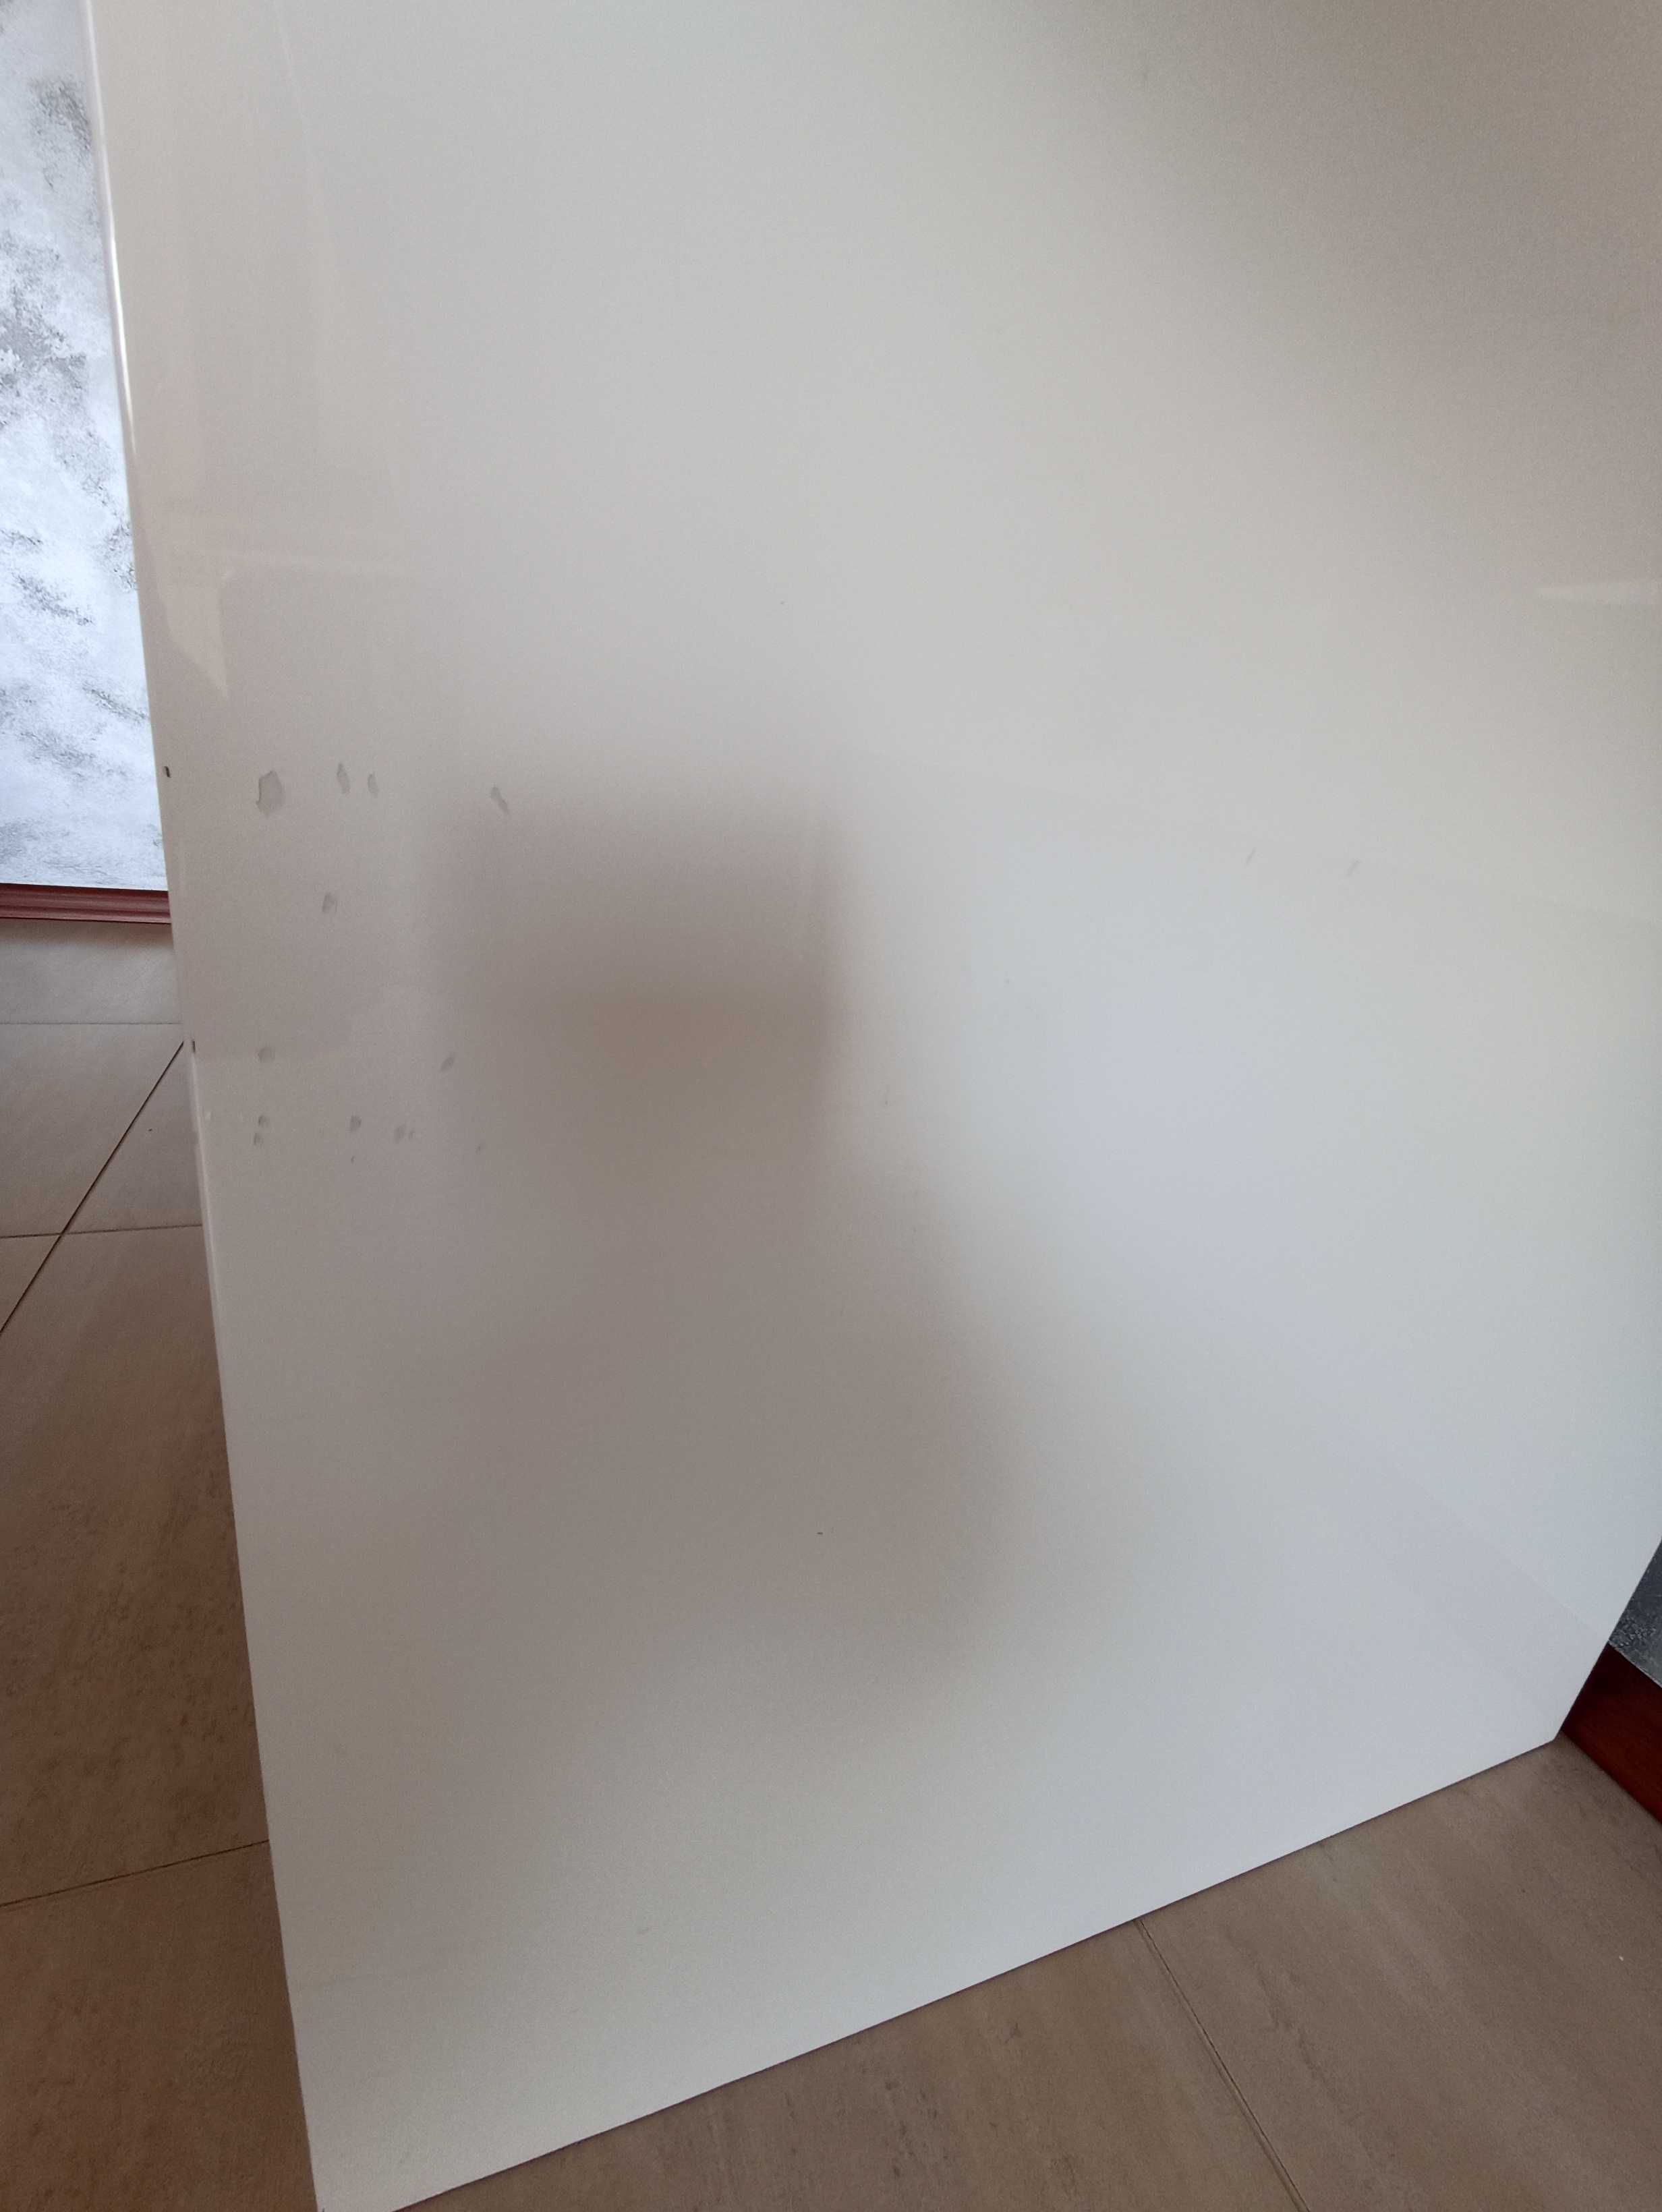 Biurko 160 cm×65 cm, masywne, biały lakier